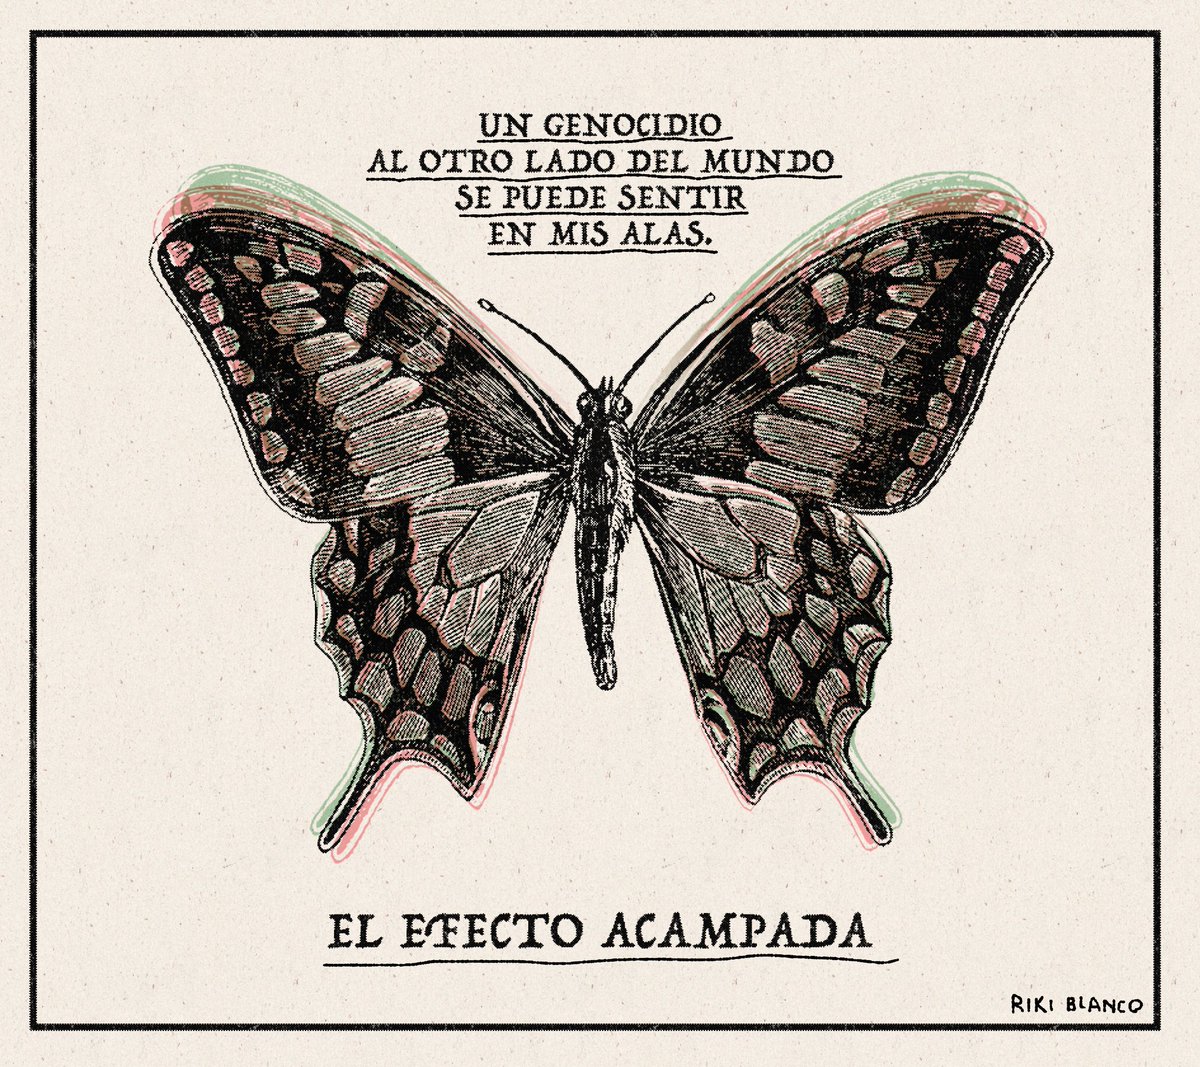 Todo mi apoyo a las acampadas contra la barbarie. Mi viñeta de hoy en El País. #CeasefireNOW